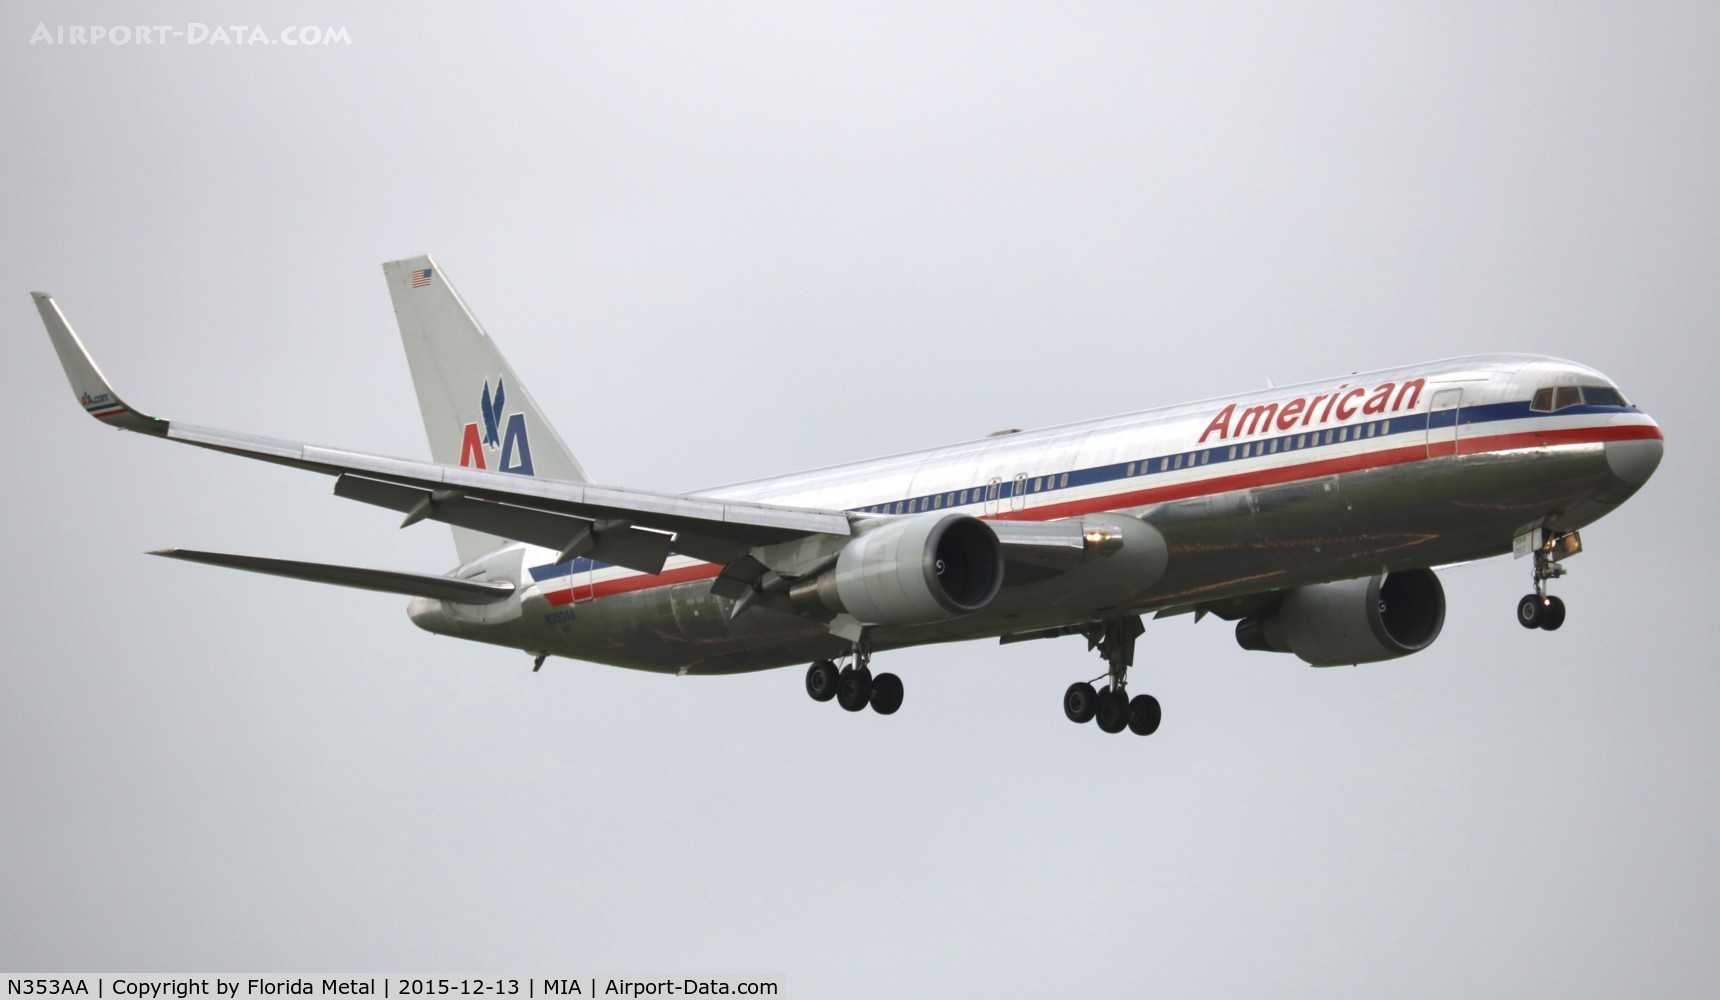 N353AA, 1988 Boeing 767-323 C/N 24034, American